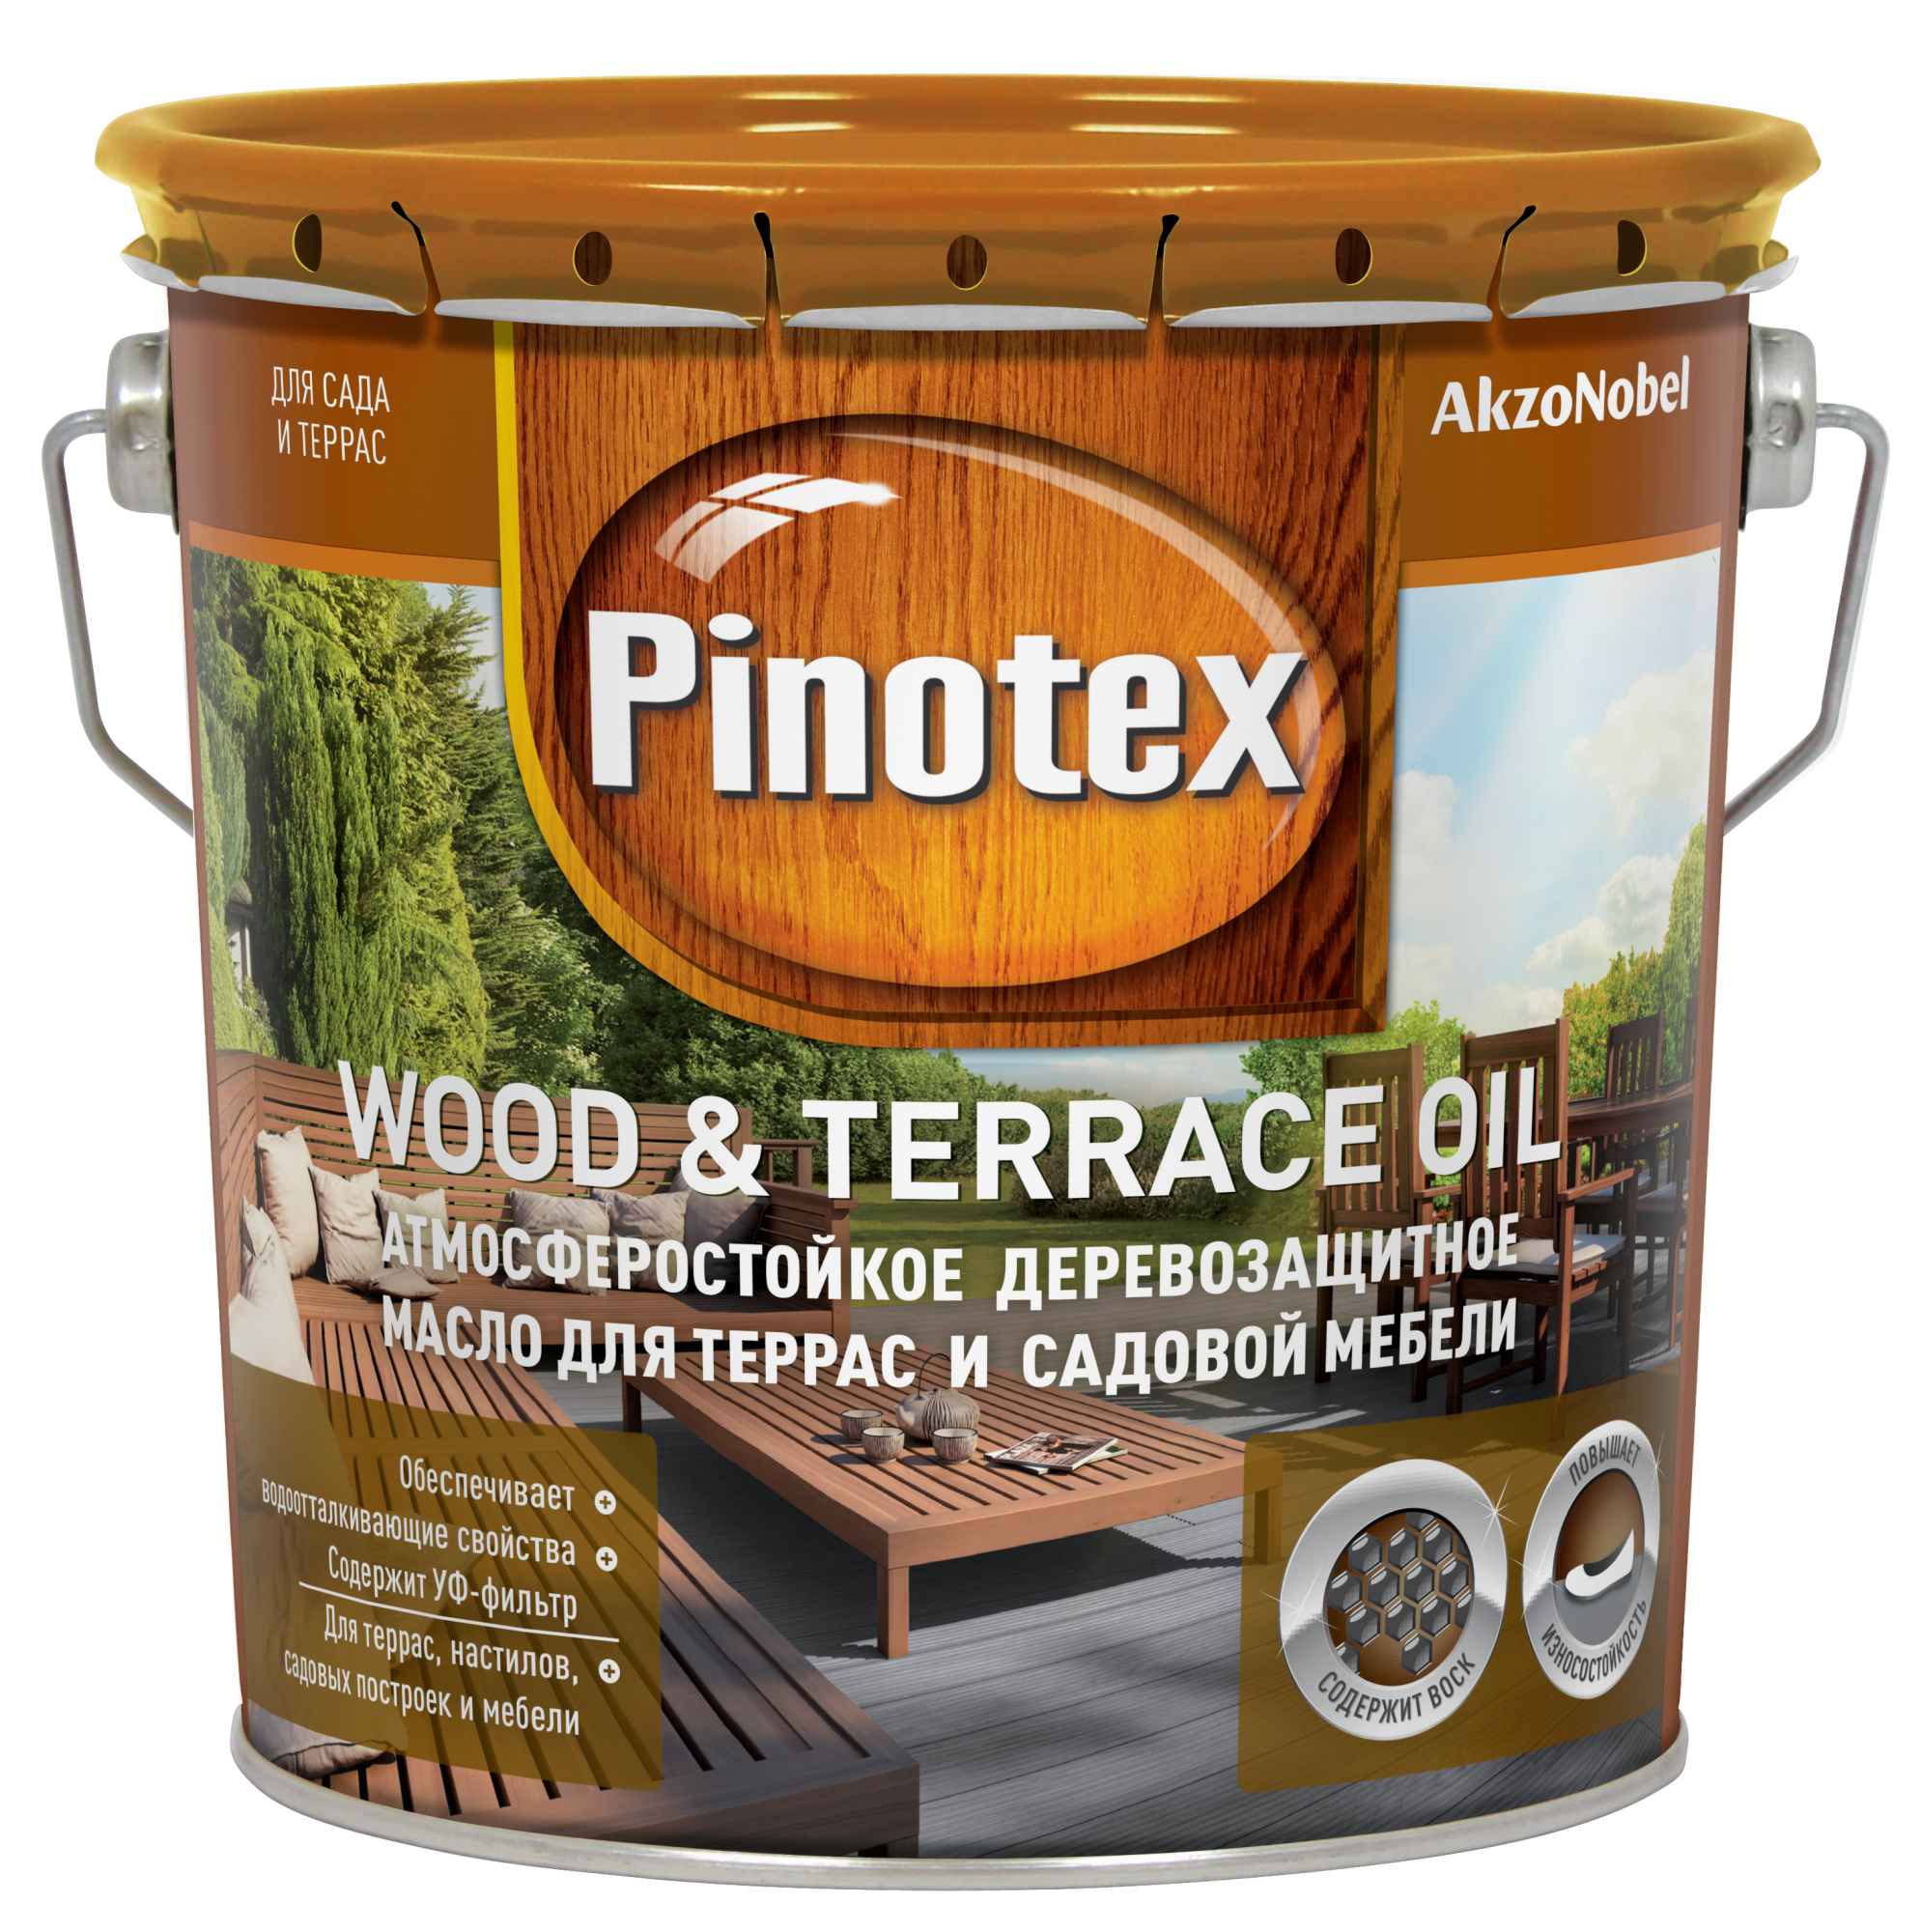 Pinotex Wood&Terrace Oil купить в Волгограде по цене от 1090.00 руб.  Пинотекс Вуд колеруемое деревозащитное масло для террас и садовой мебели. в  интернет-магазине красок КраскиНаДом.